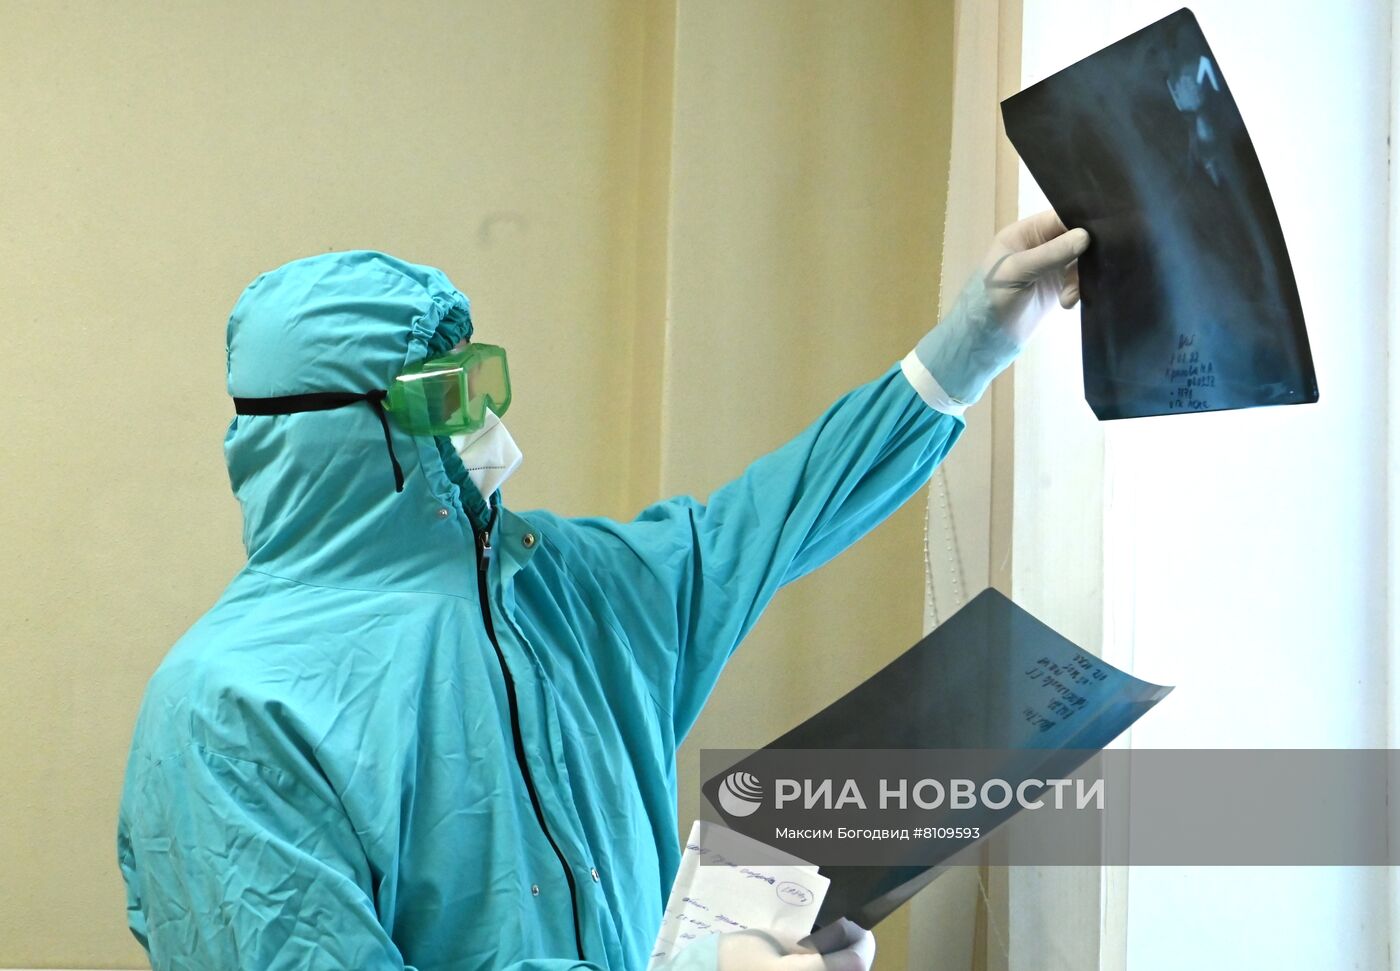 Лечение пациентов с Covid-19 в Республиканской больнице Казани